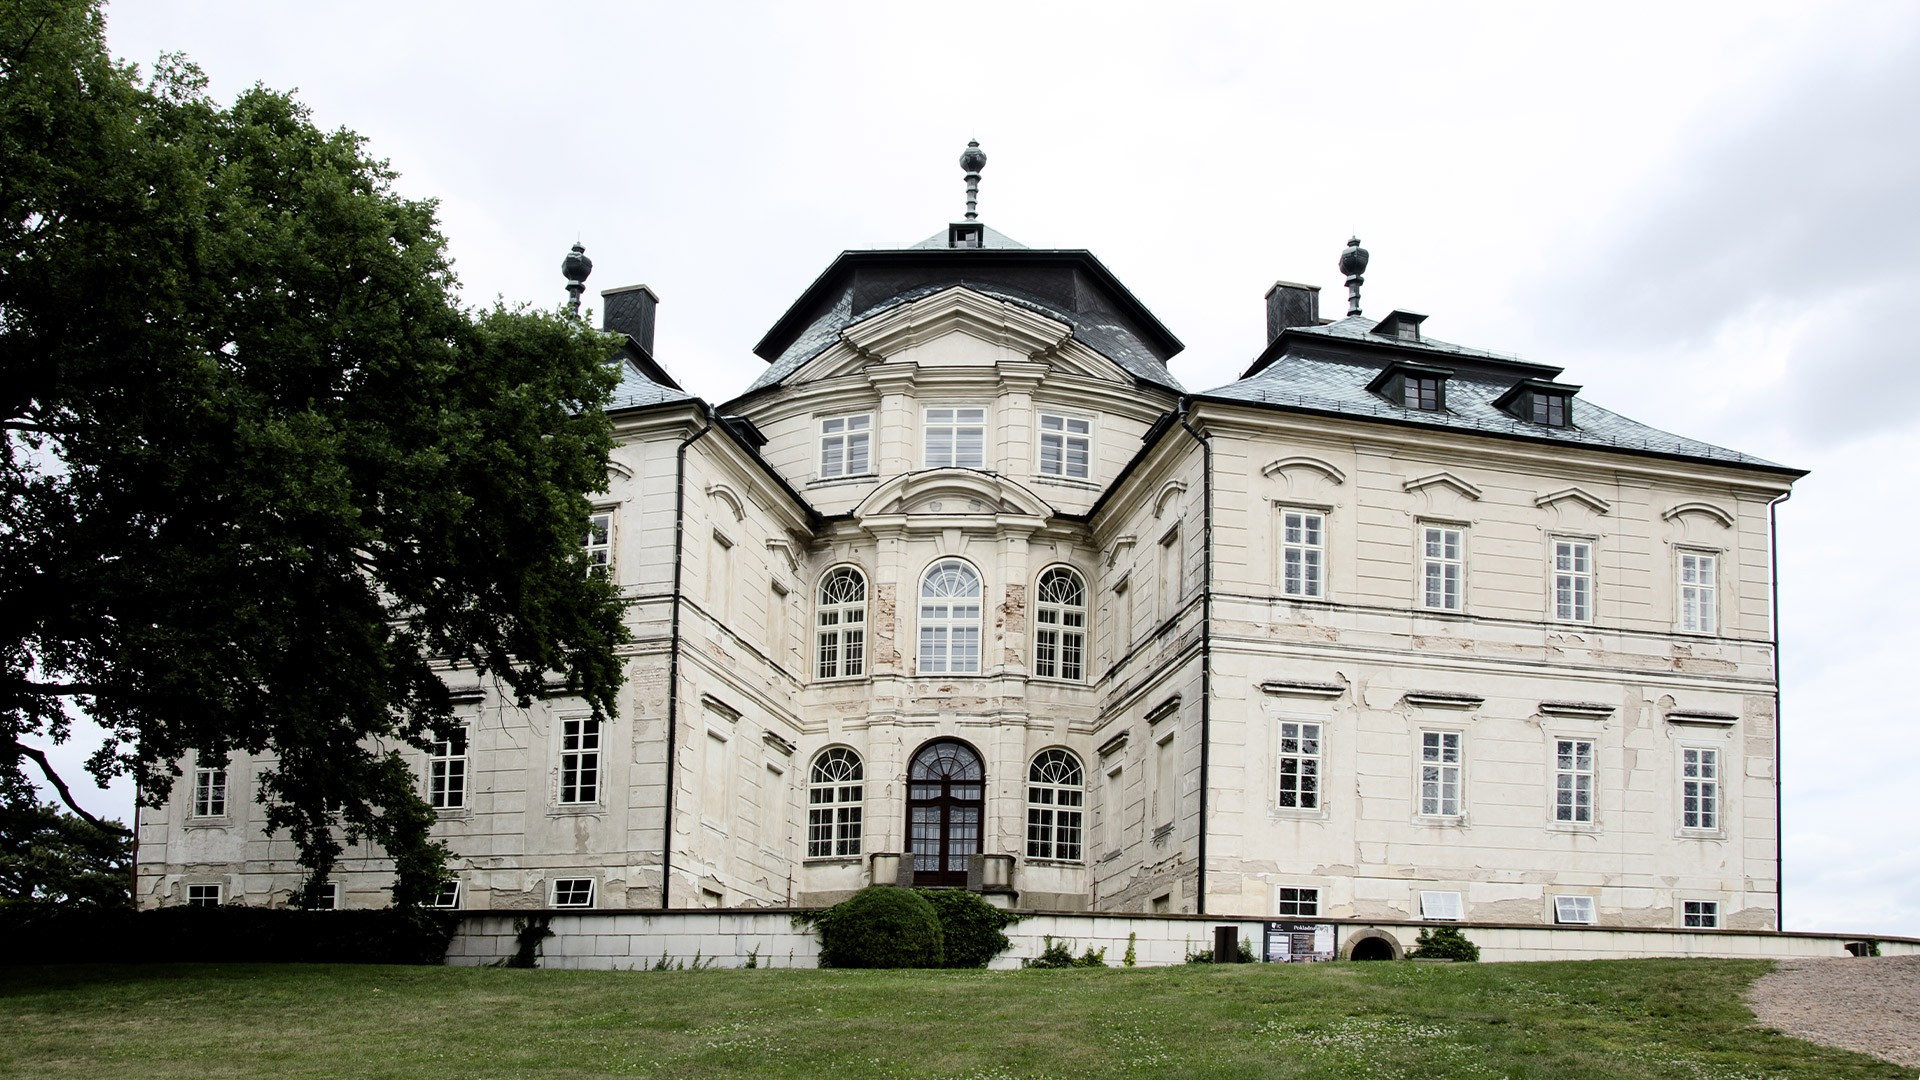 Zamek Karola Korony | Chl. n. Cidlinou, Czechy